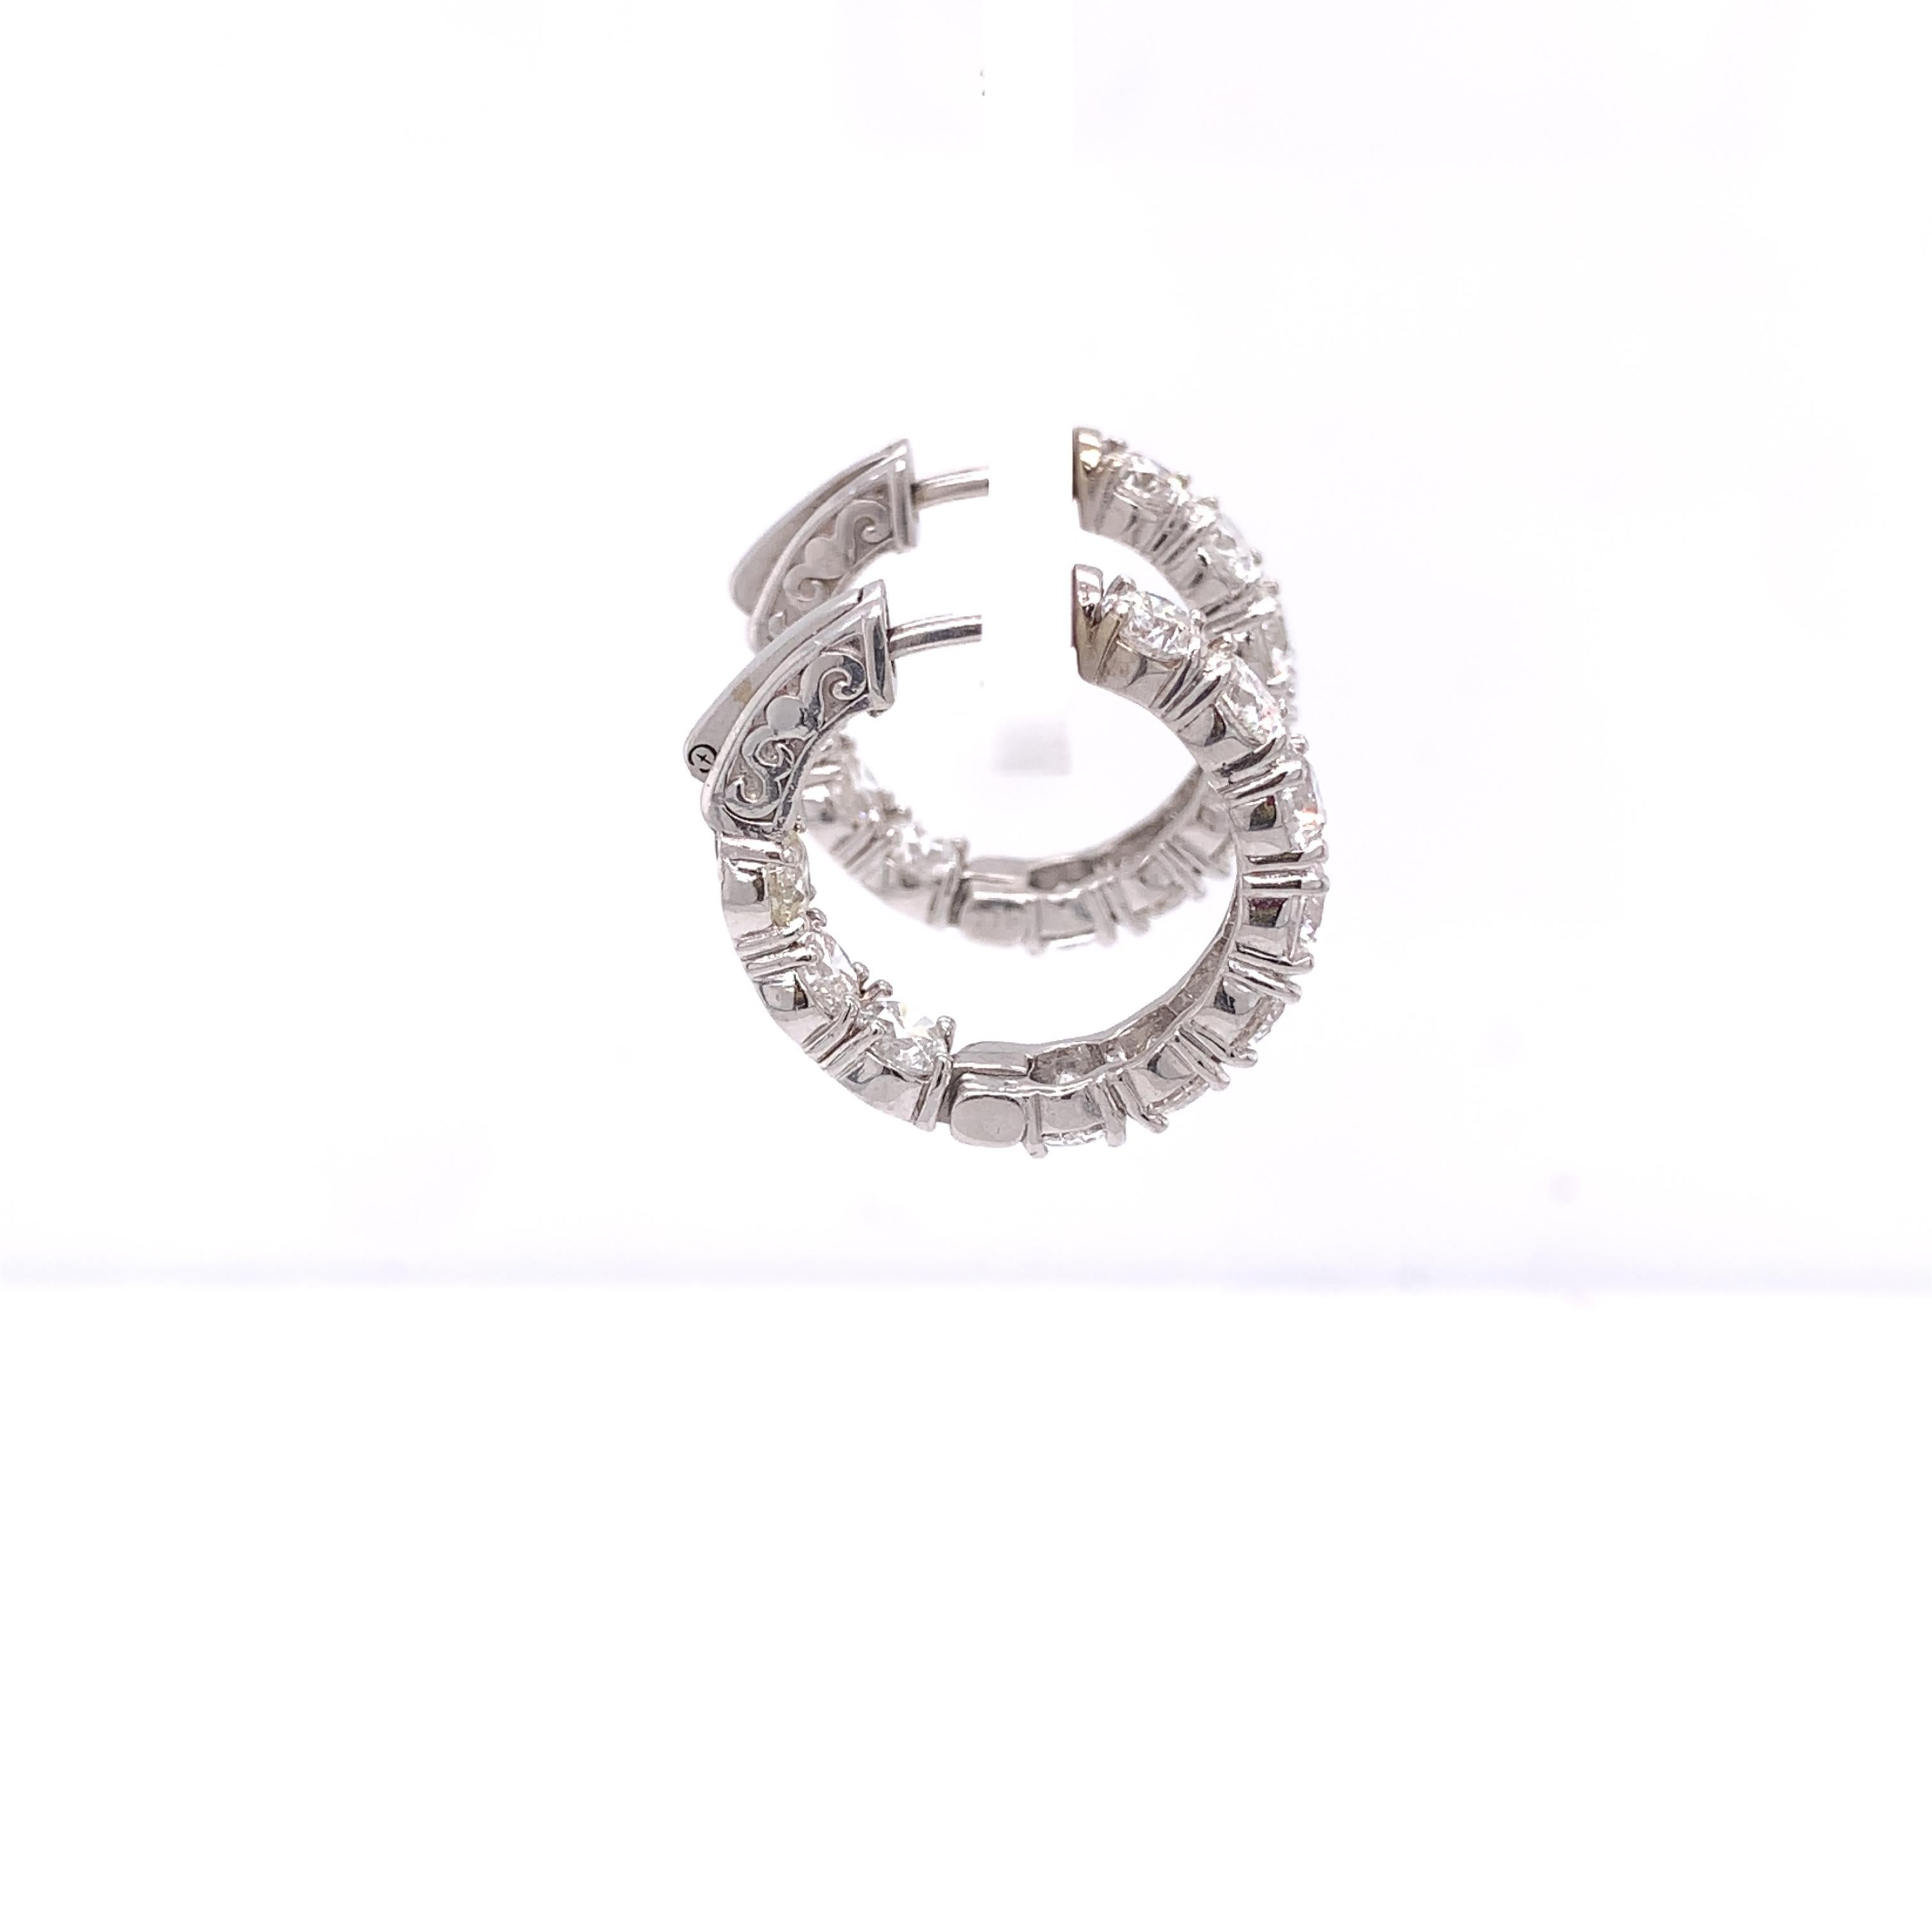 5 carat diamond hoop earrings